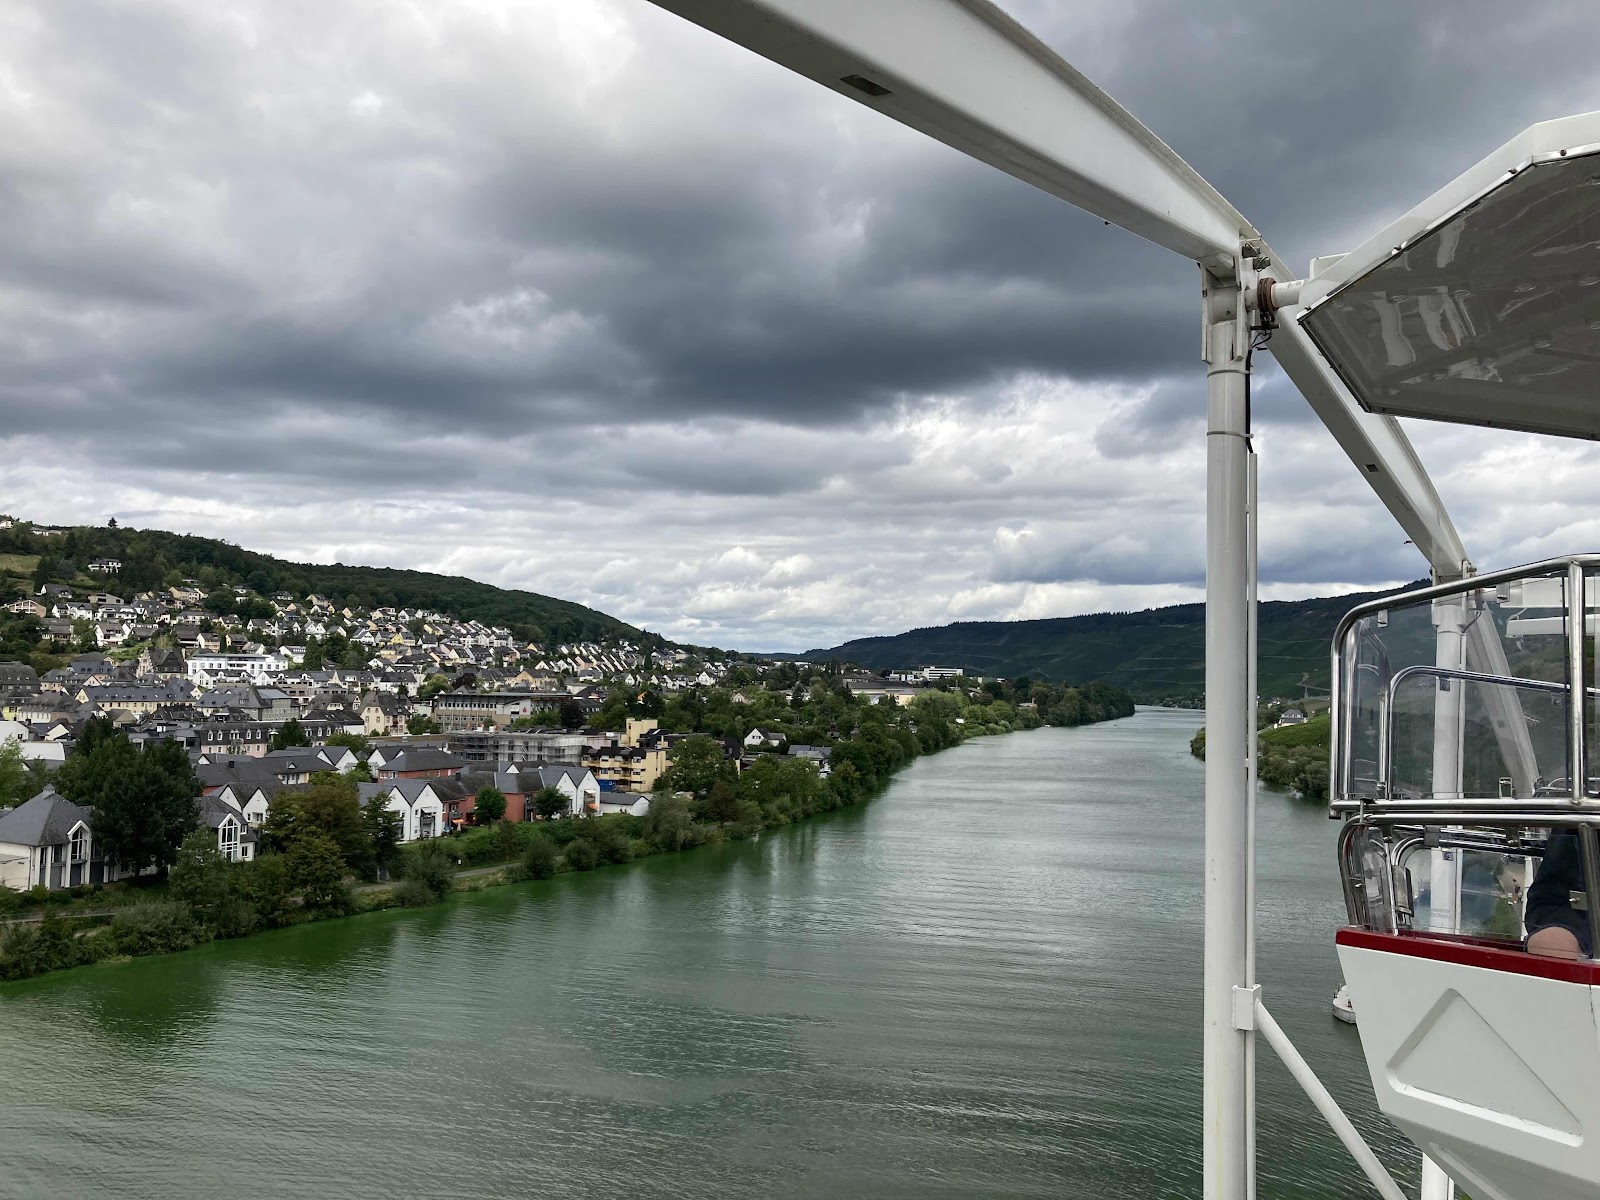 View from Ferris Wheel, Bernkastel, Moezel